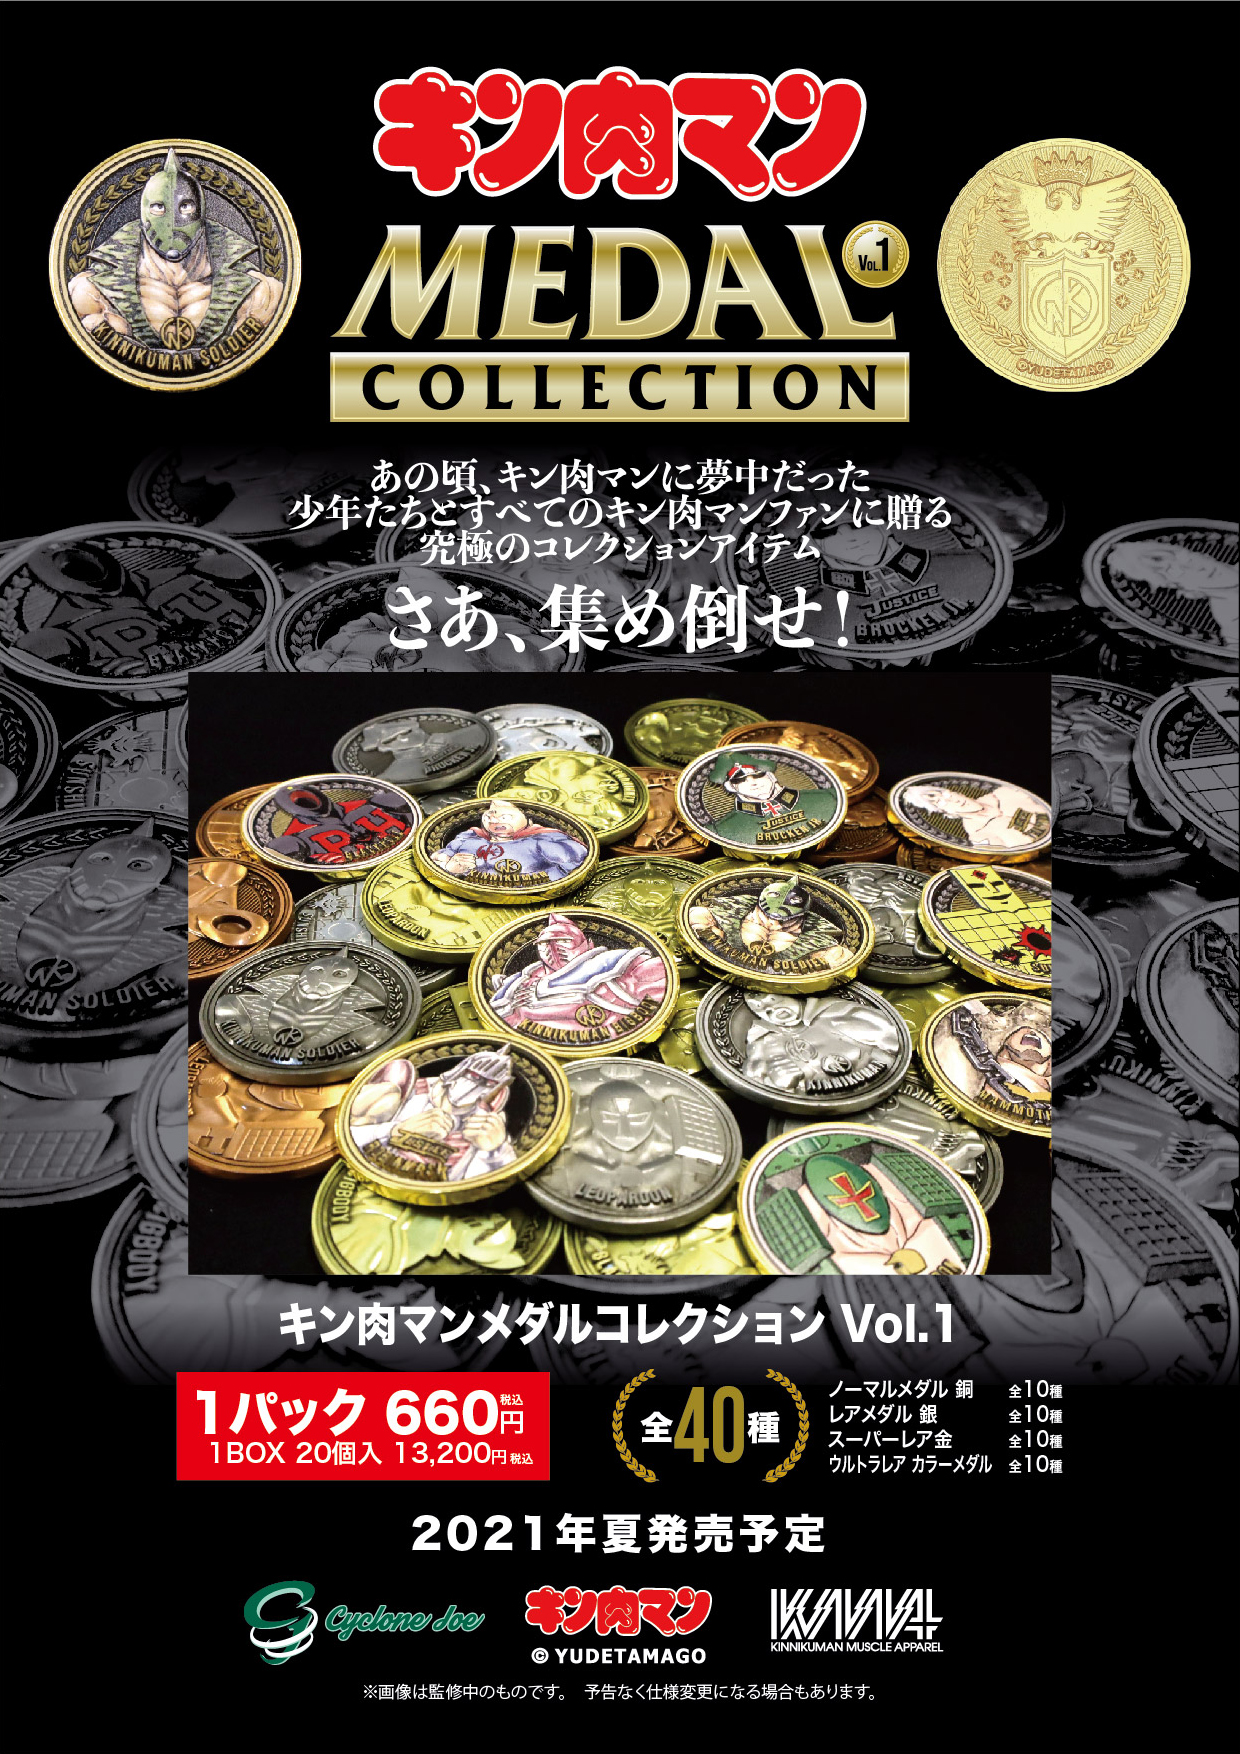 キン肉マンメダルコレクション VOL.1 BOX 20個入 【初回限定特典 KIN 